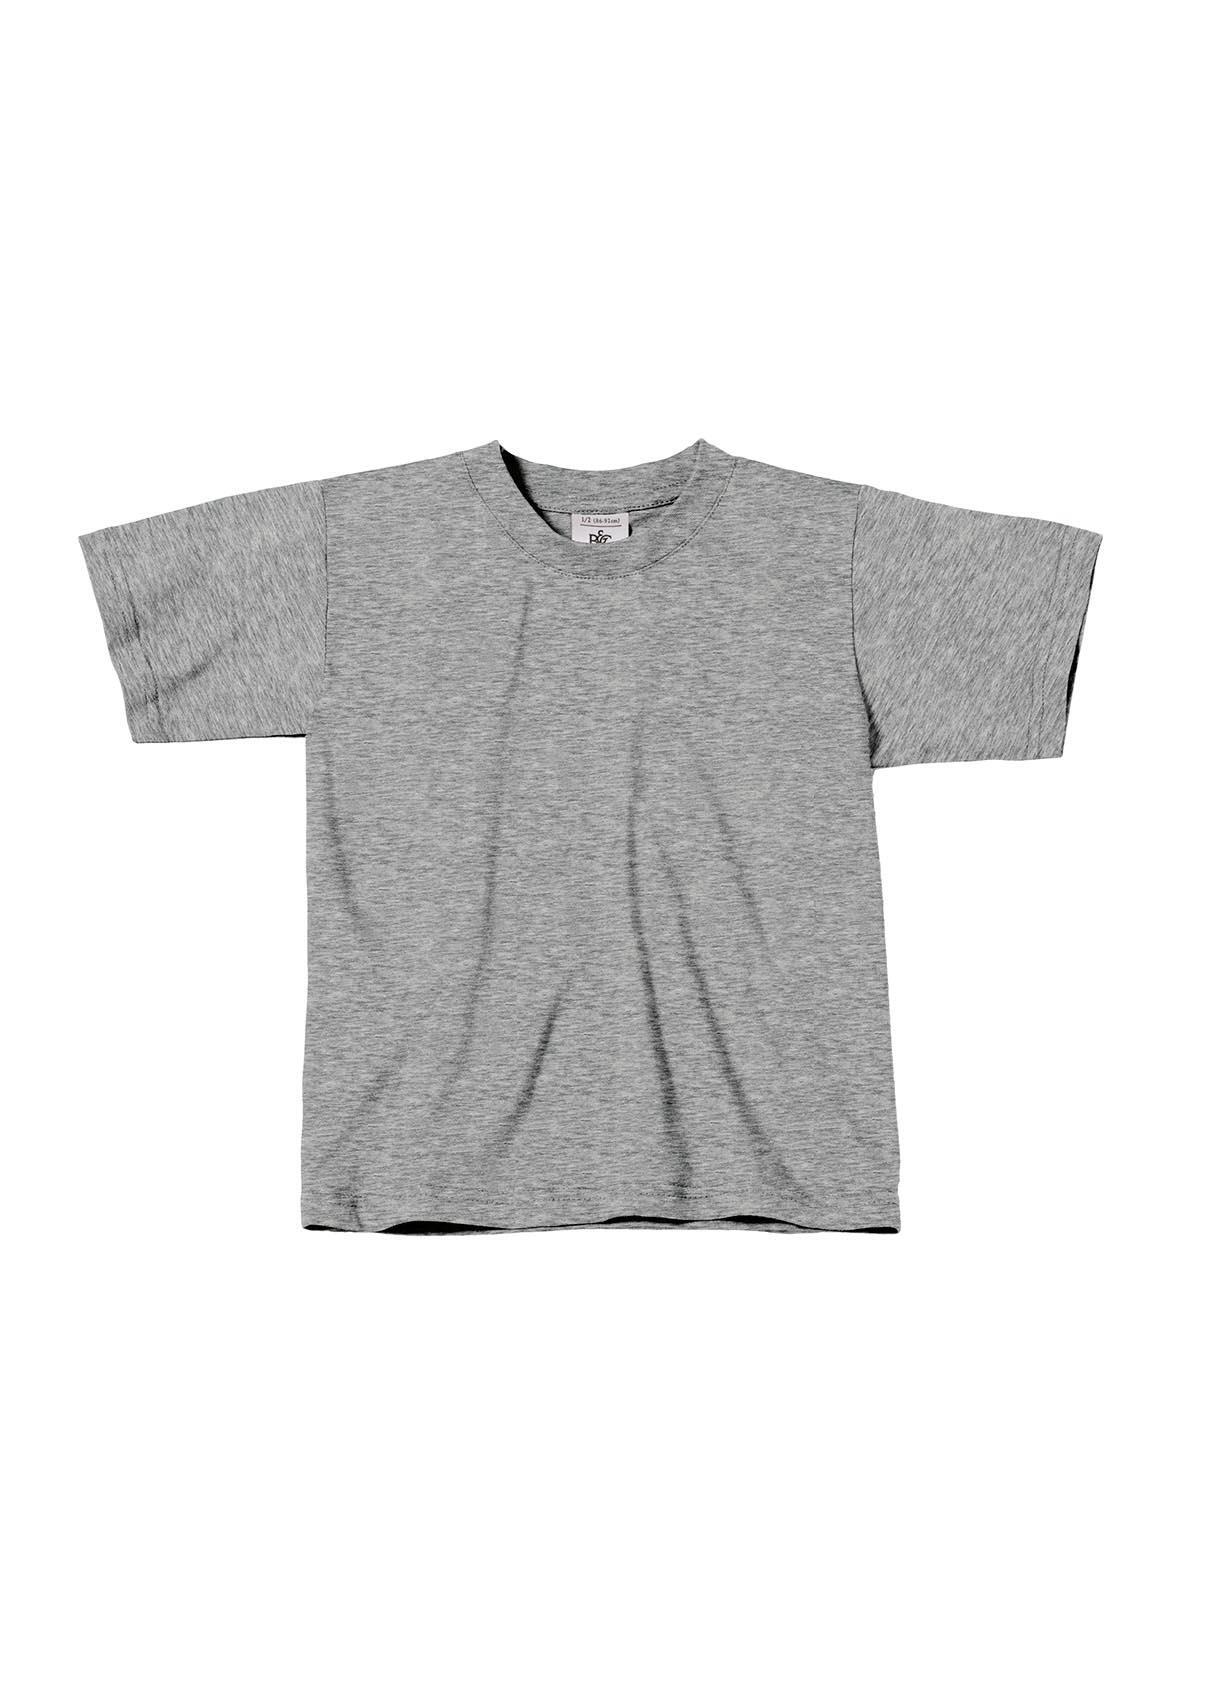 T-shirt voor kids sport grijs kinder shirt